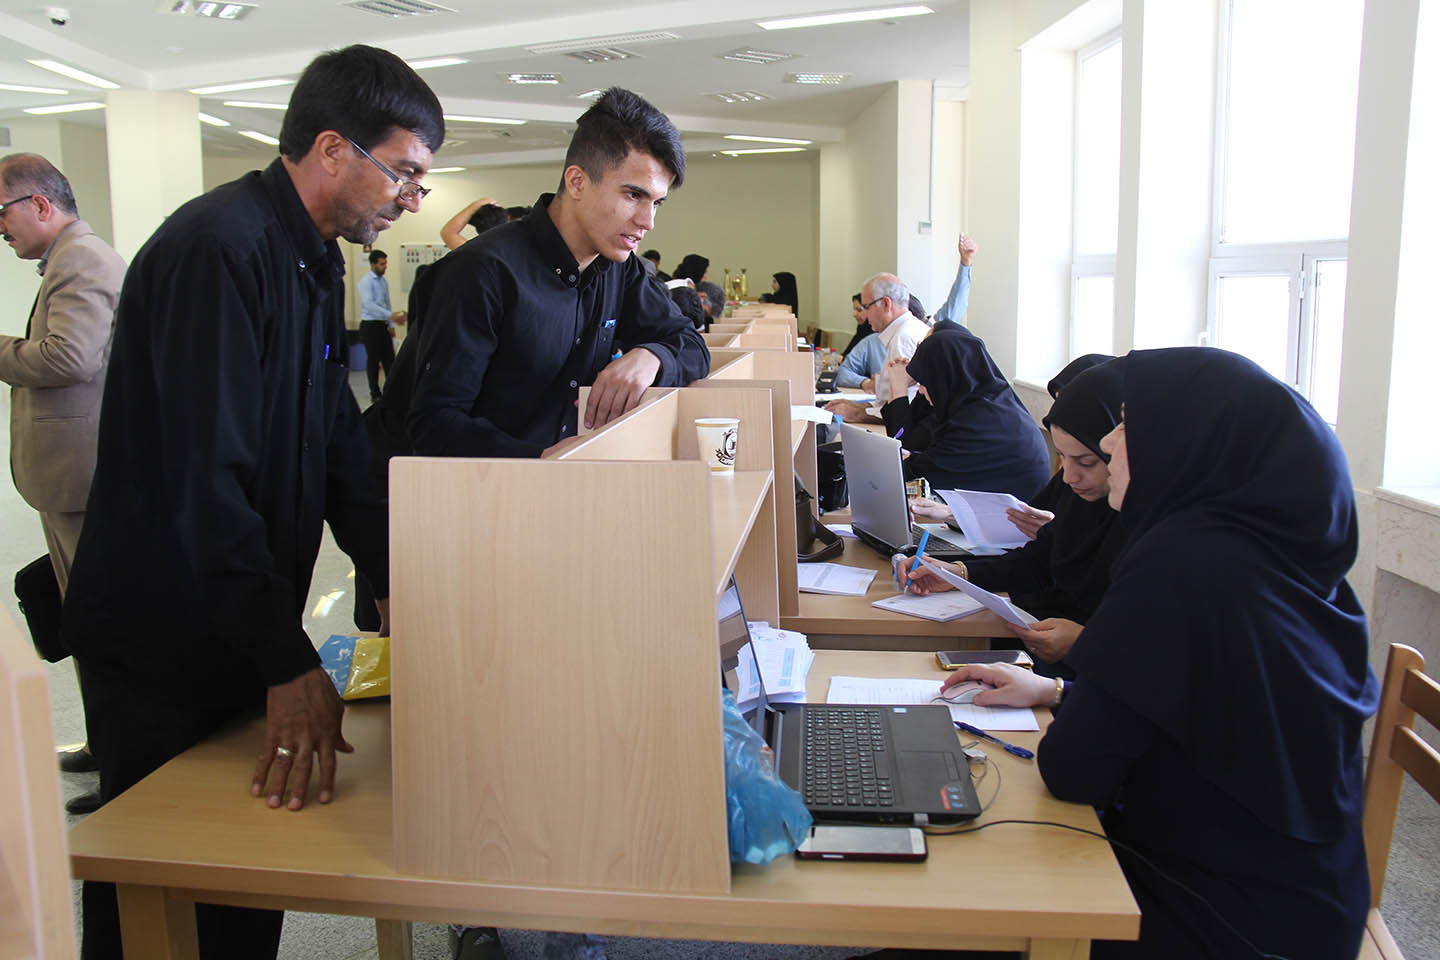 گزارش تصويري ثبت نام دانشجويان ورودي جديد کارشناسي دانشگاه